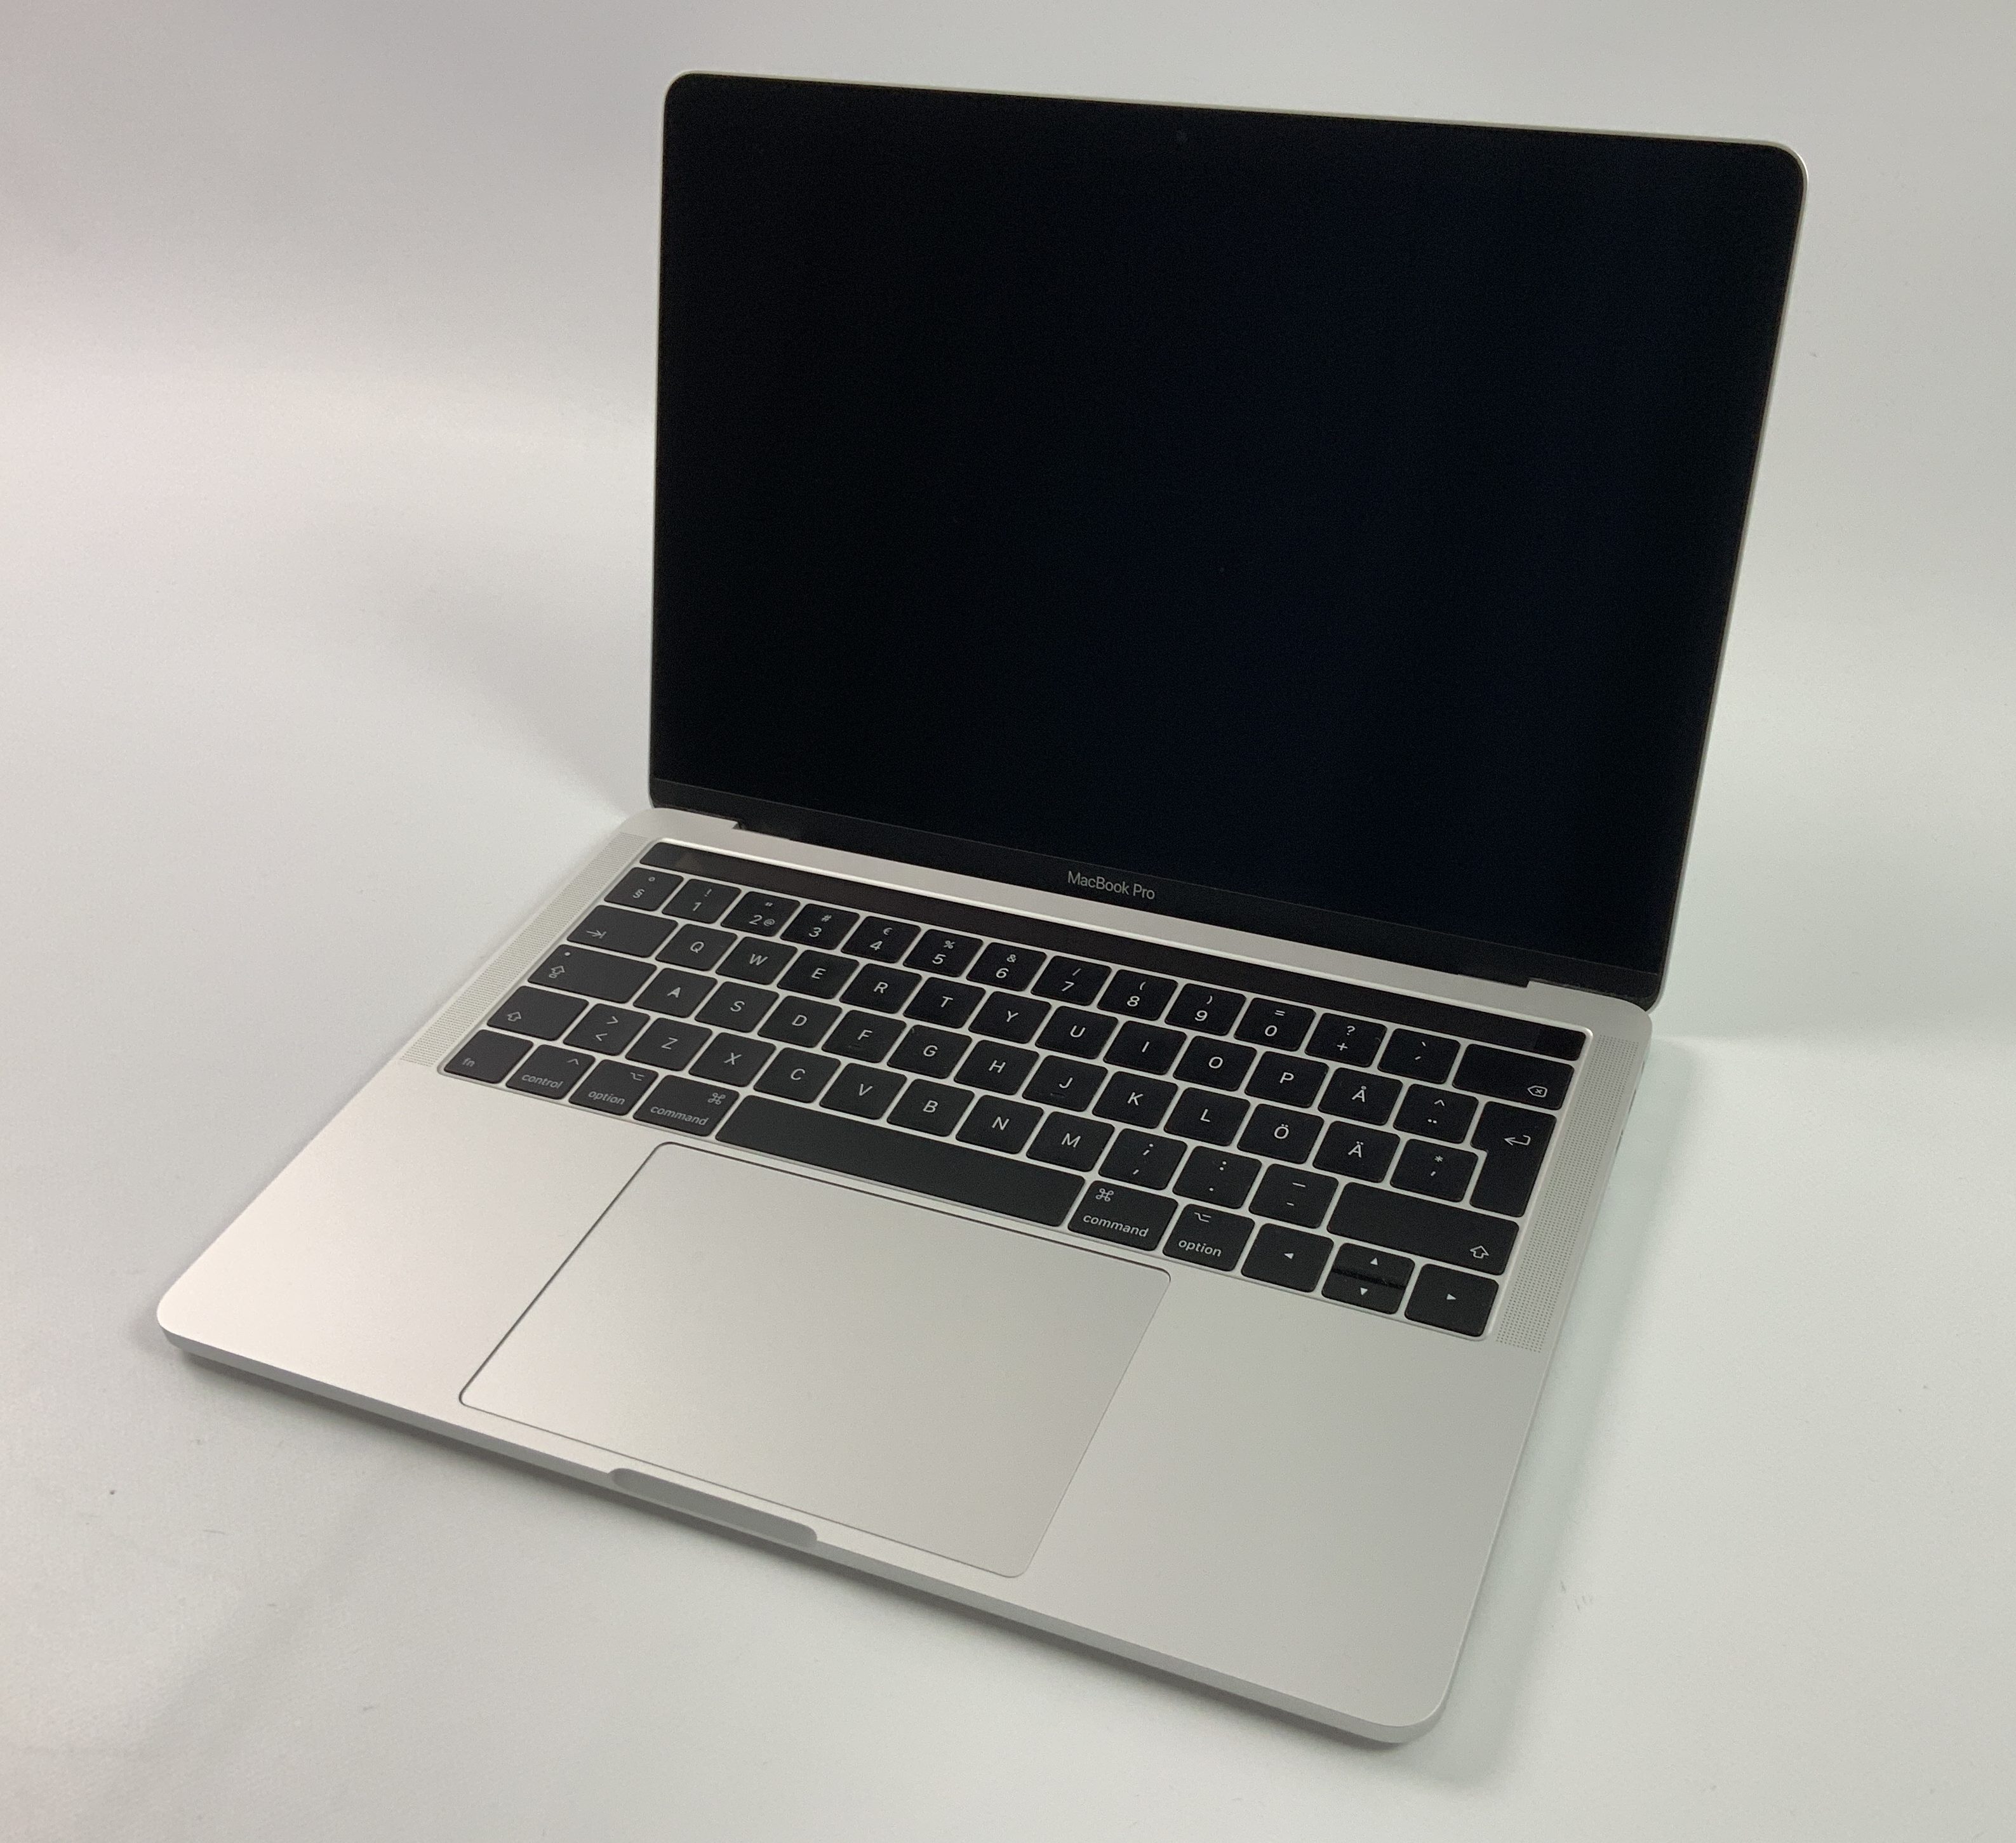 MacBook Pro 13" 4TBT Mid 2017 (Intel Core i5 3.1 GHz 8 GB RAM 256 GB SSD), Silver, Intel Core i5 3.1 GHz, 8 GB RAM, 256 GB SSD, immagine 1